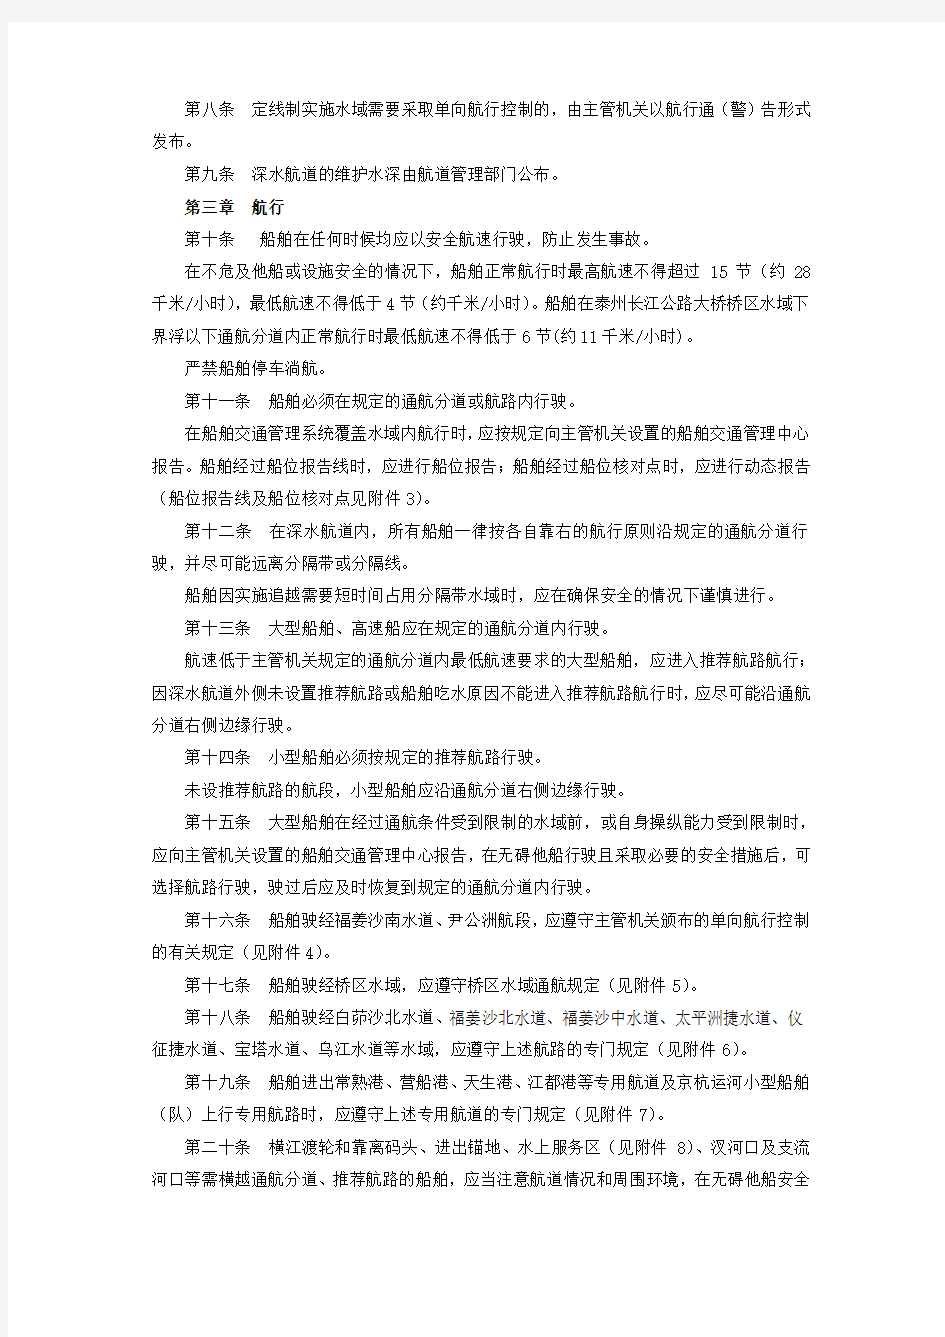 长江江苏段船舶定线制规定 (5)